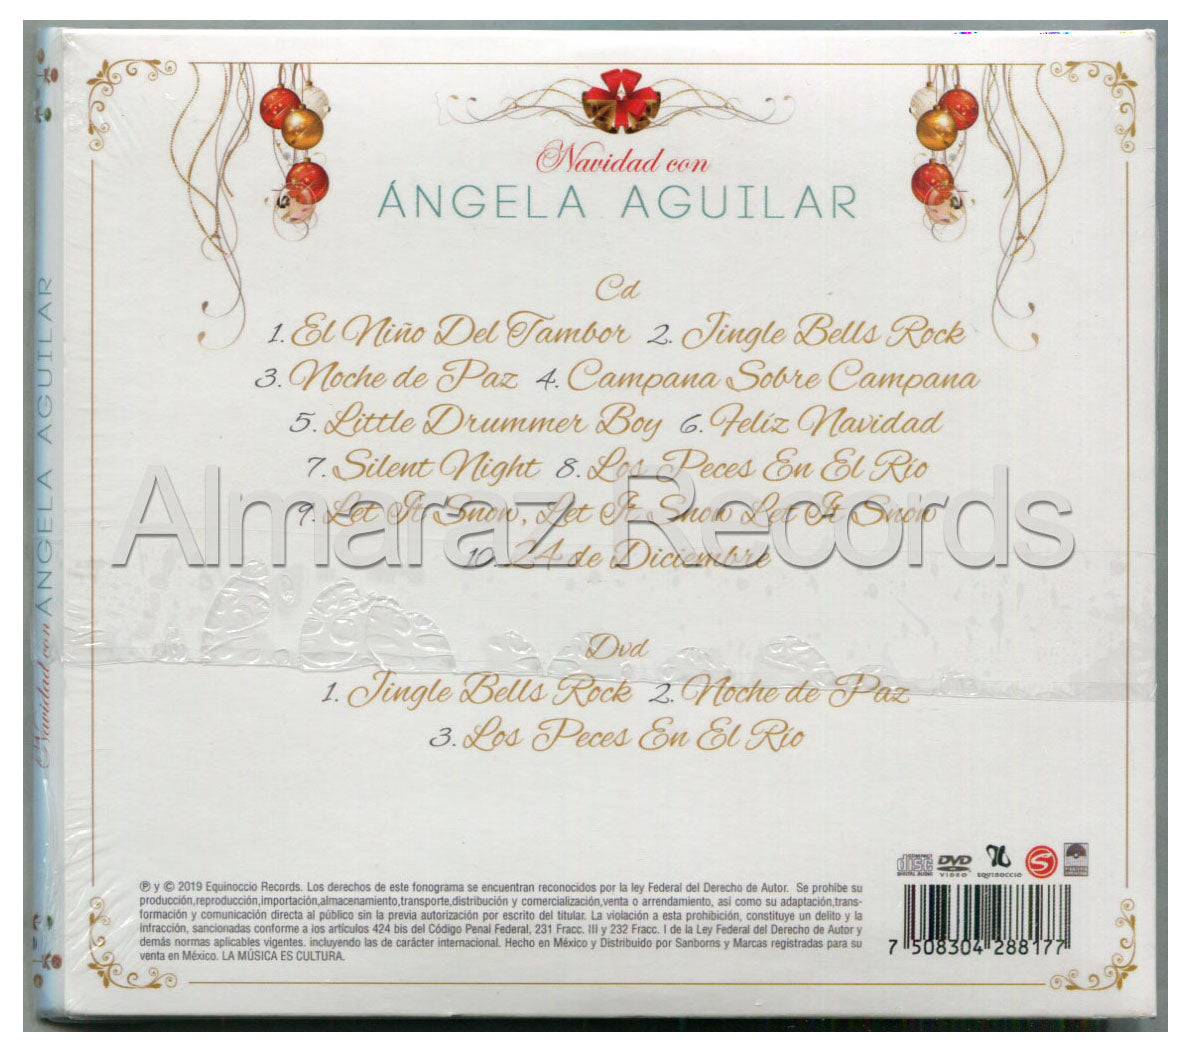 Angela Aguilar Navidad Con CD+DVD